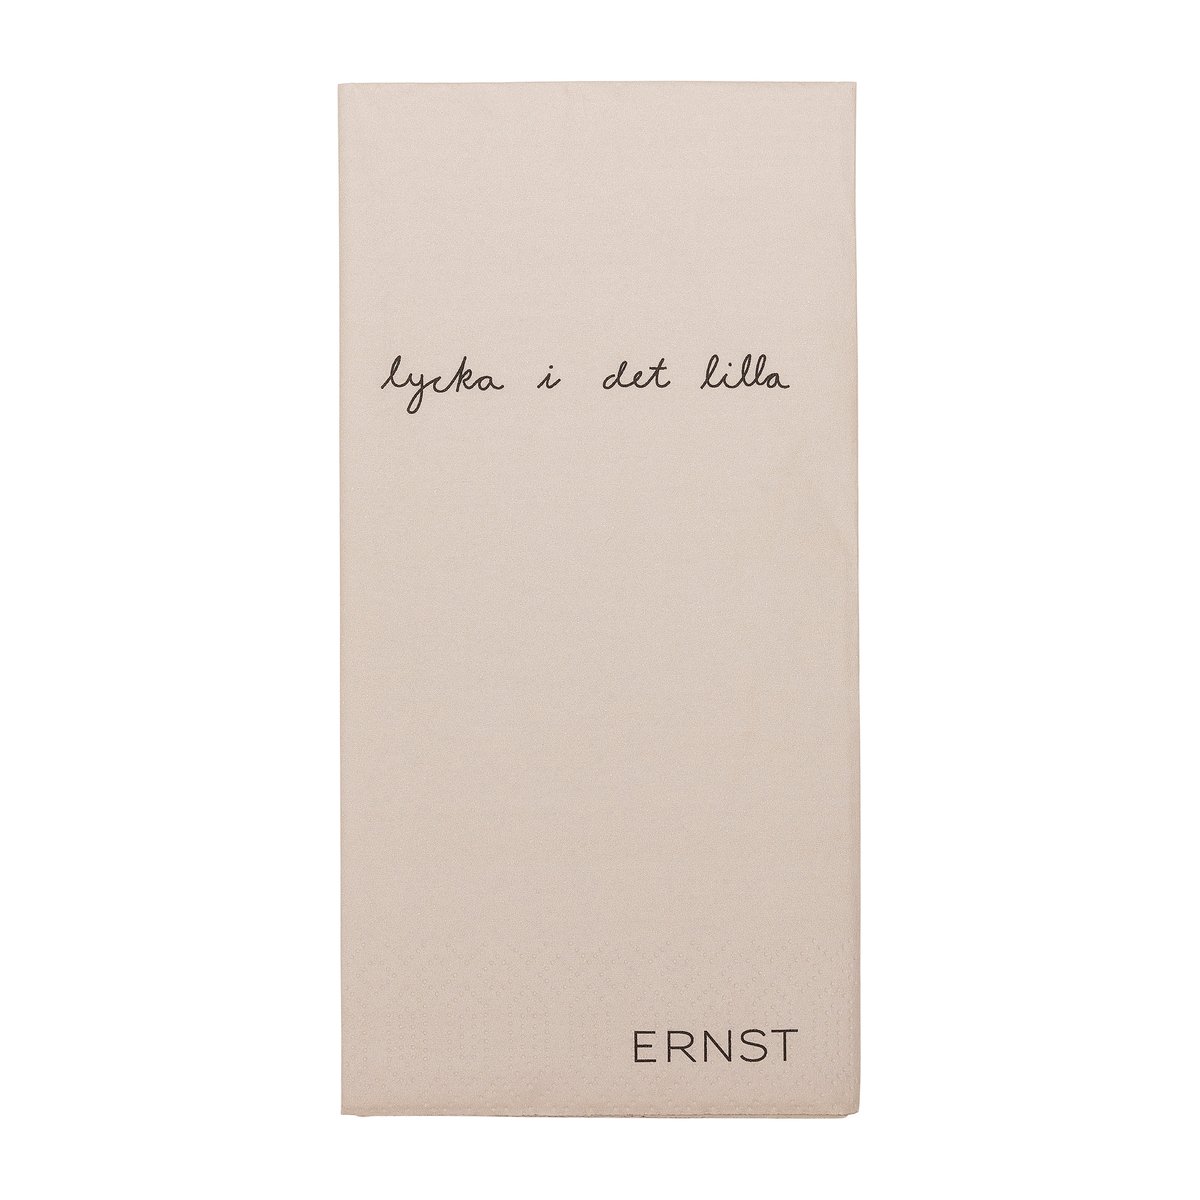 ERNST Ernst serviet med citatet “Lycka i det lilla” 20-pak Natur-Sort